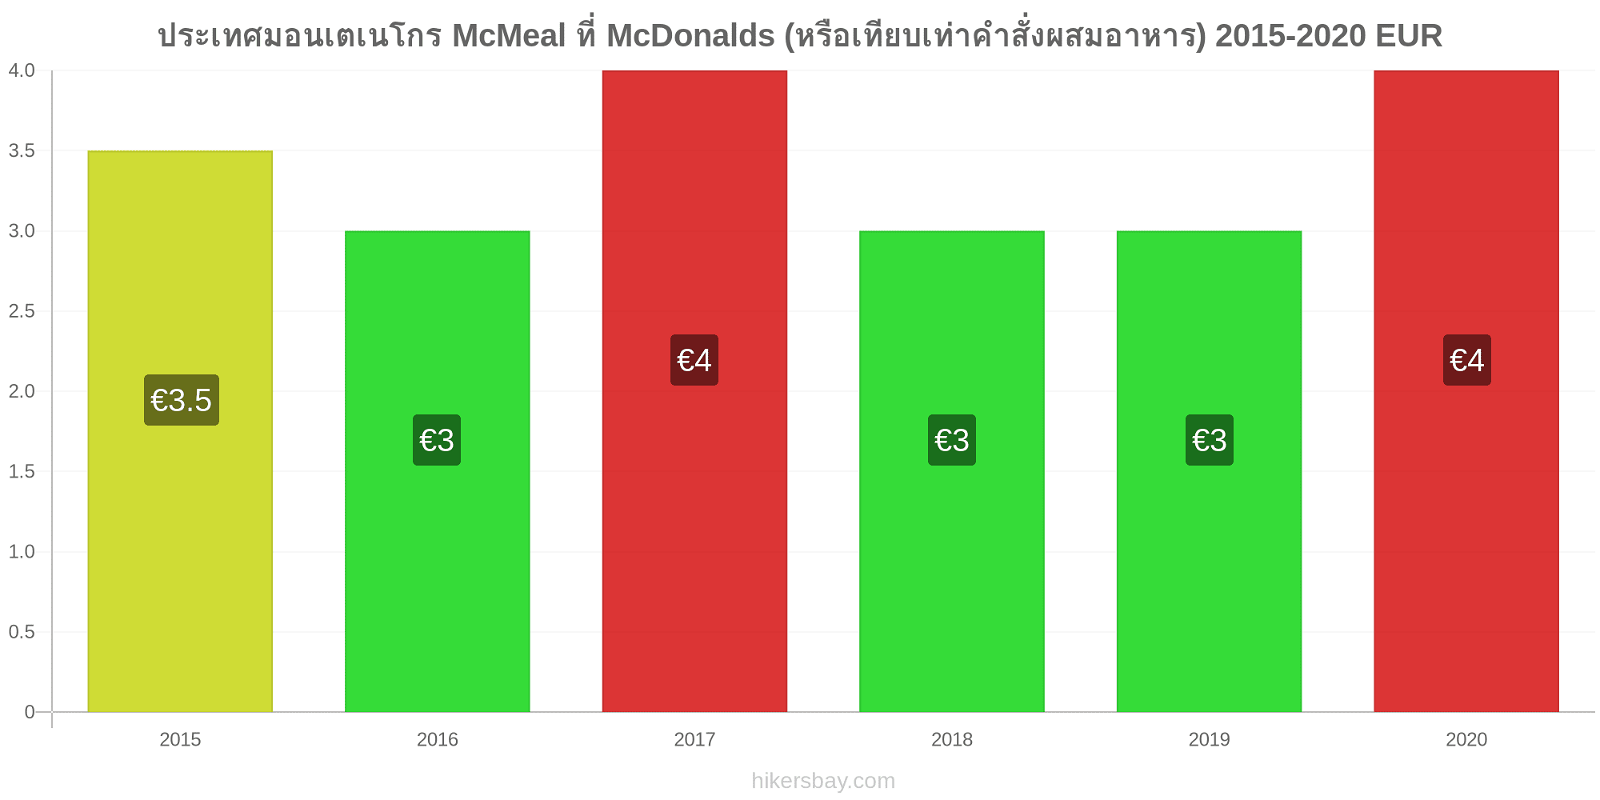 ประเทศมอนเตเนโกร การเปลี่ยนแปลงราคา McMeal ที่ McDonalds (หรือเทียบเท่าคำสั่งผสมอาหาร) hikersbay.com